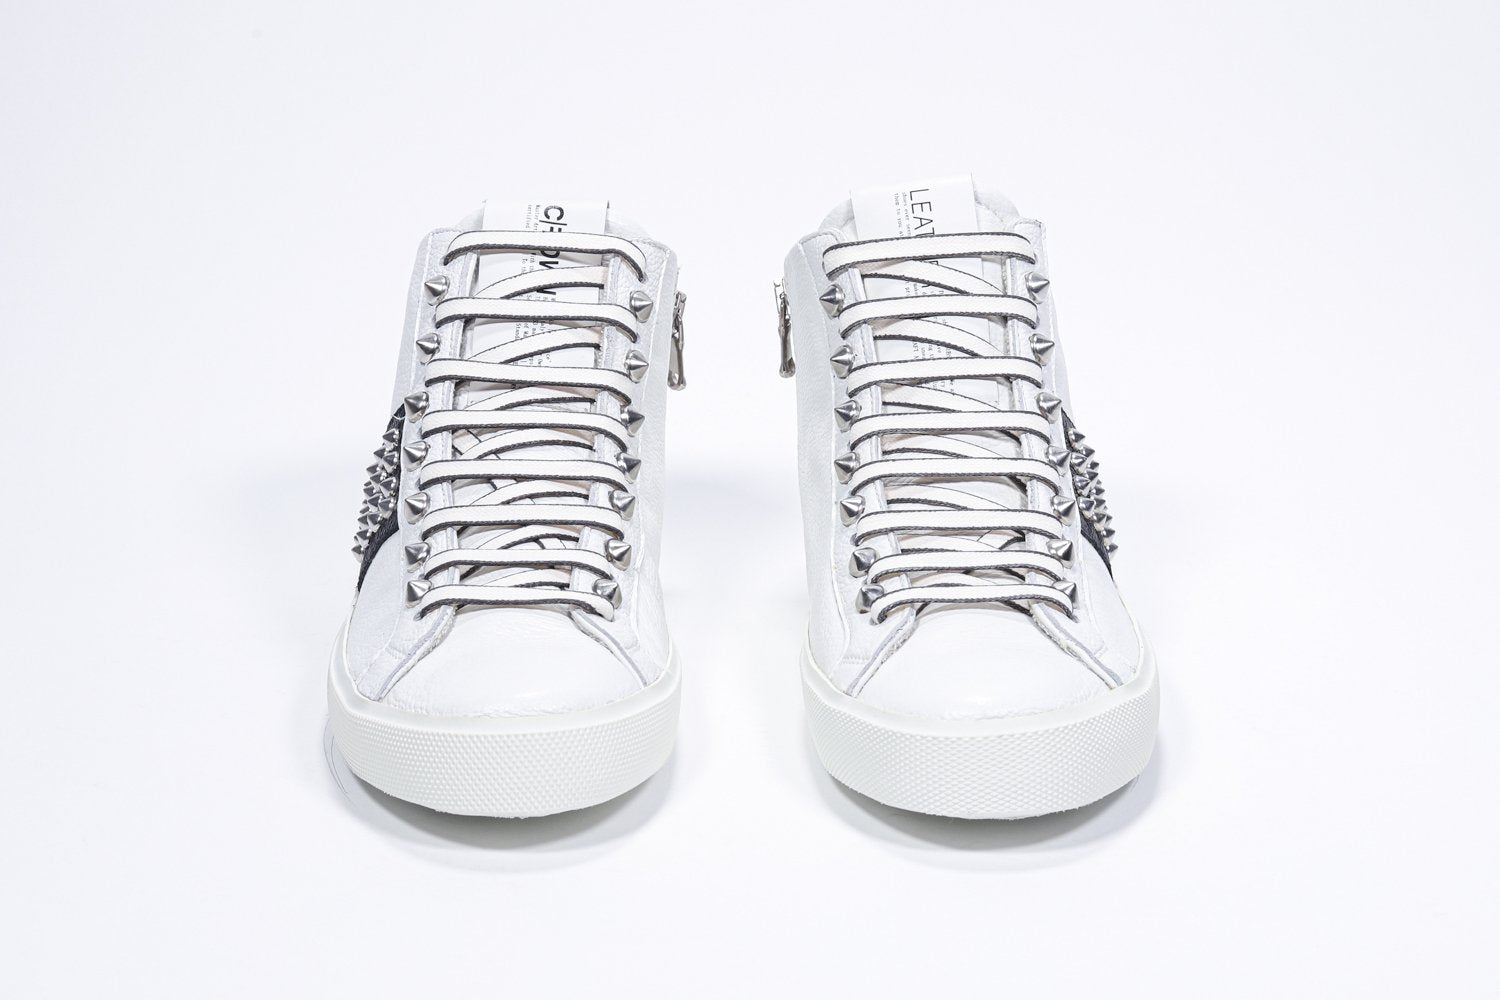 Vista frontale della mid top bianca e nera sneaker. Tomaia in pelle con borchie, zip interna e suola in gomma bianca.